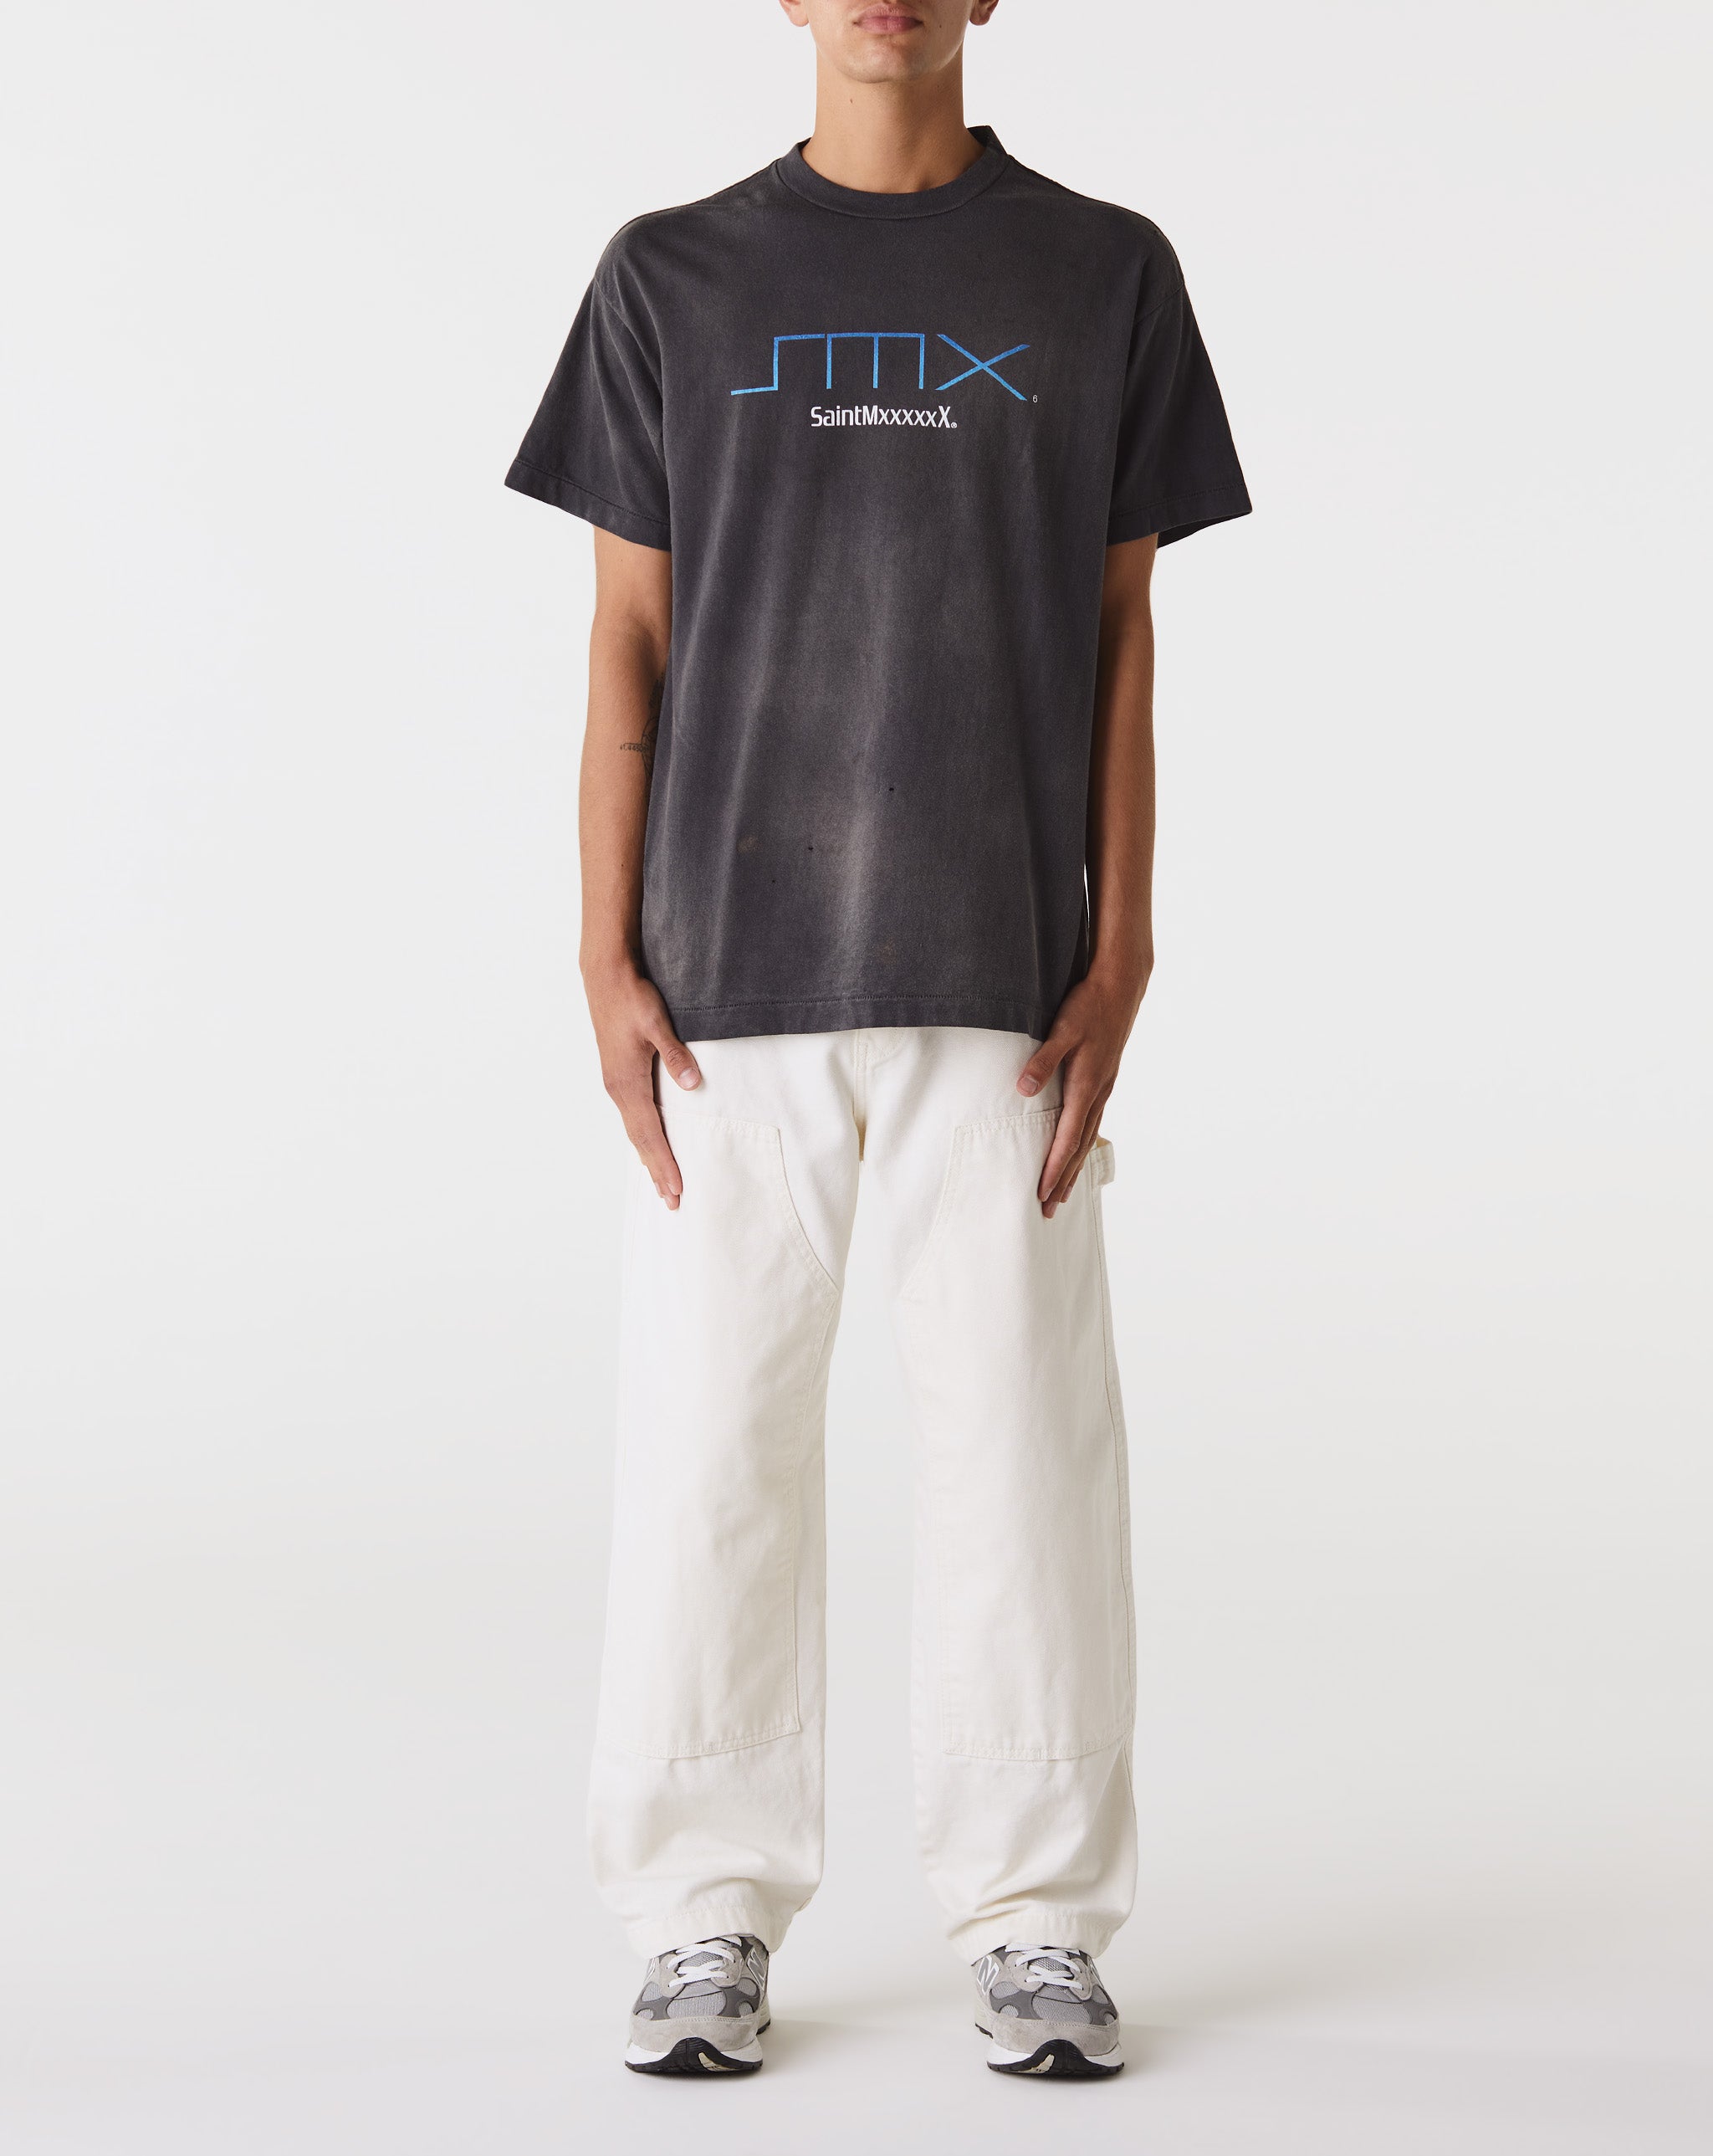 Saint Michael SM6 T-Shirt  - Cheap Urlfreeze Jordan outlet